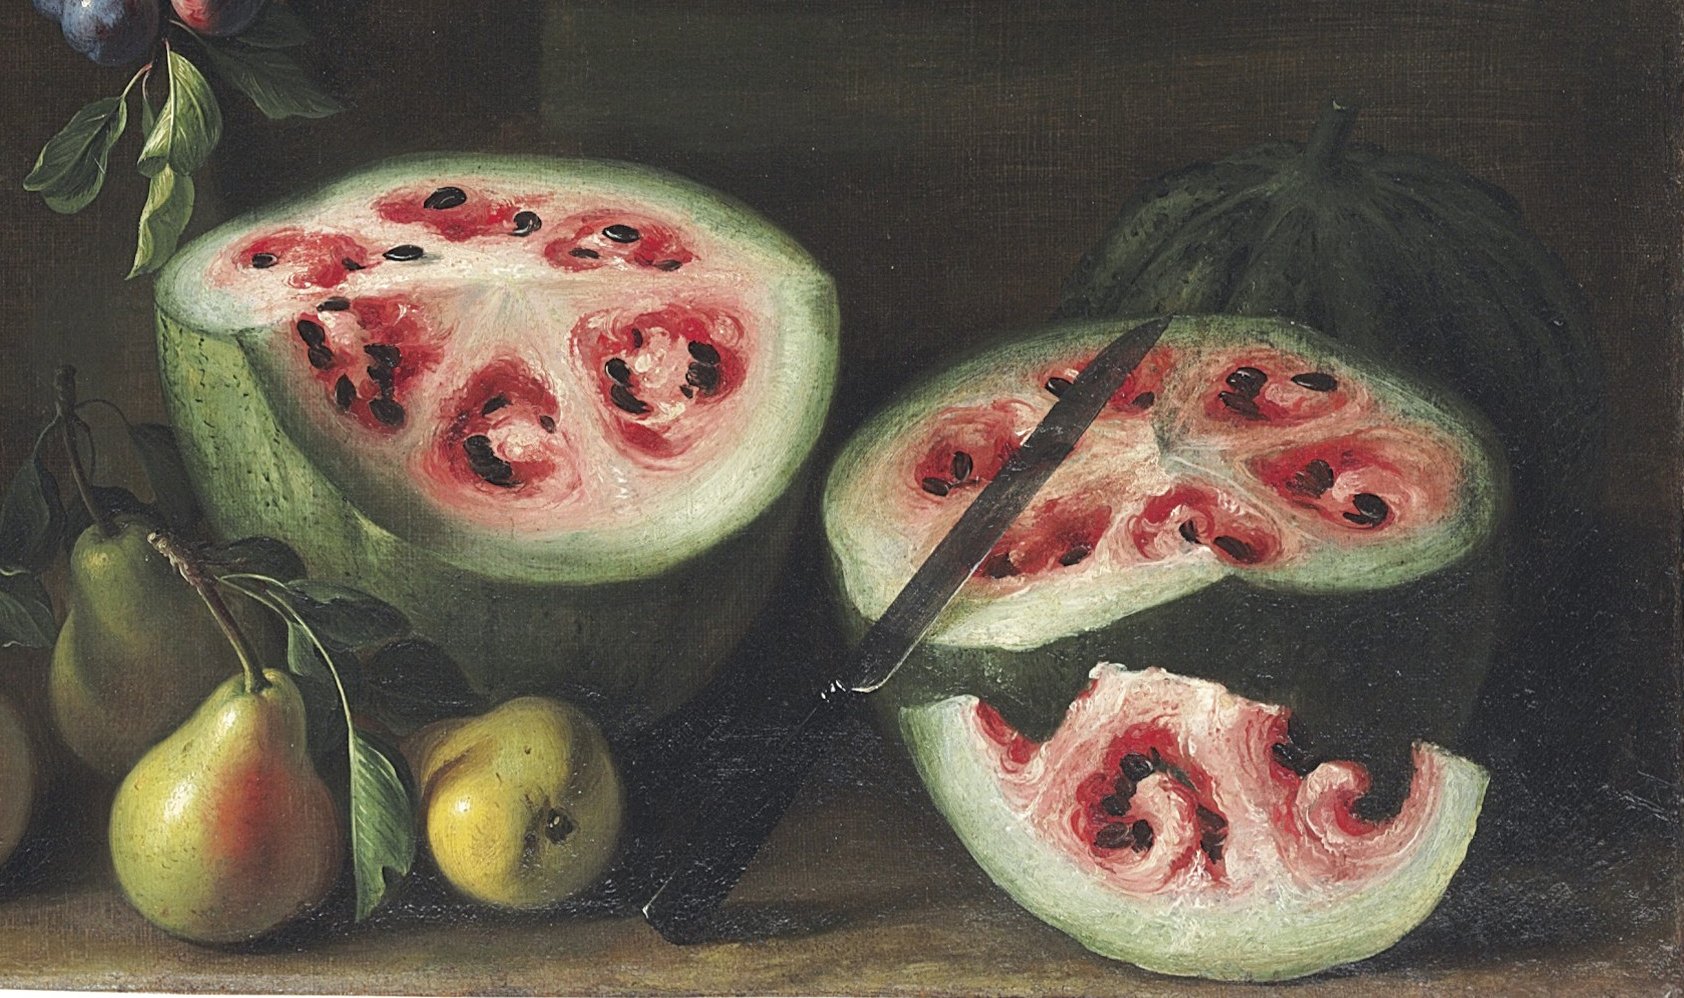  Zpátky v čase: 6 000 let stará semena melounu naznačují chutě minulosti